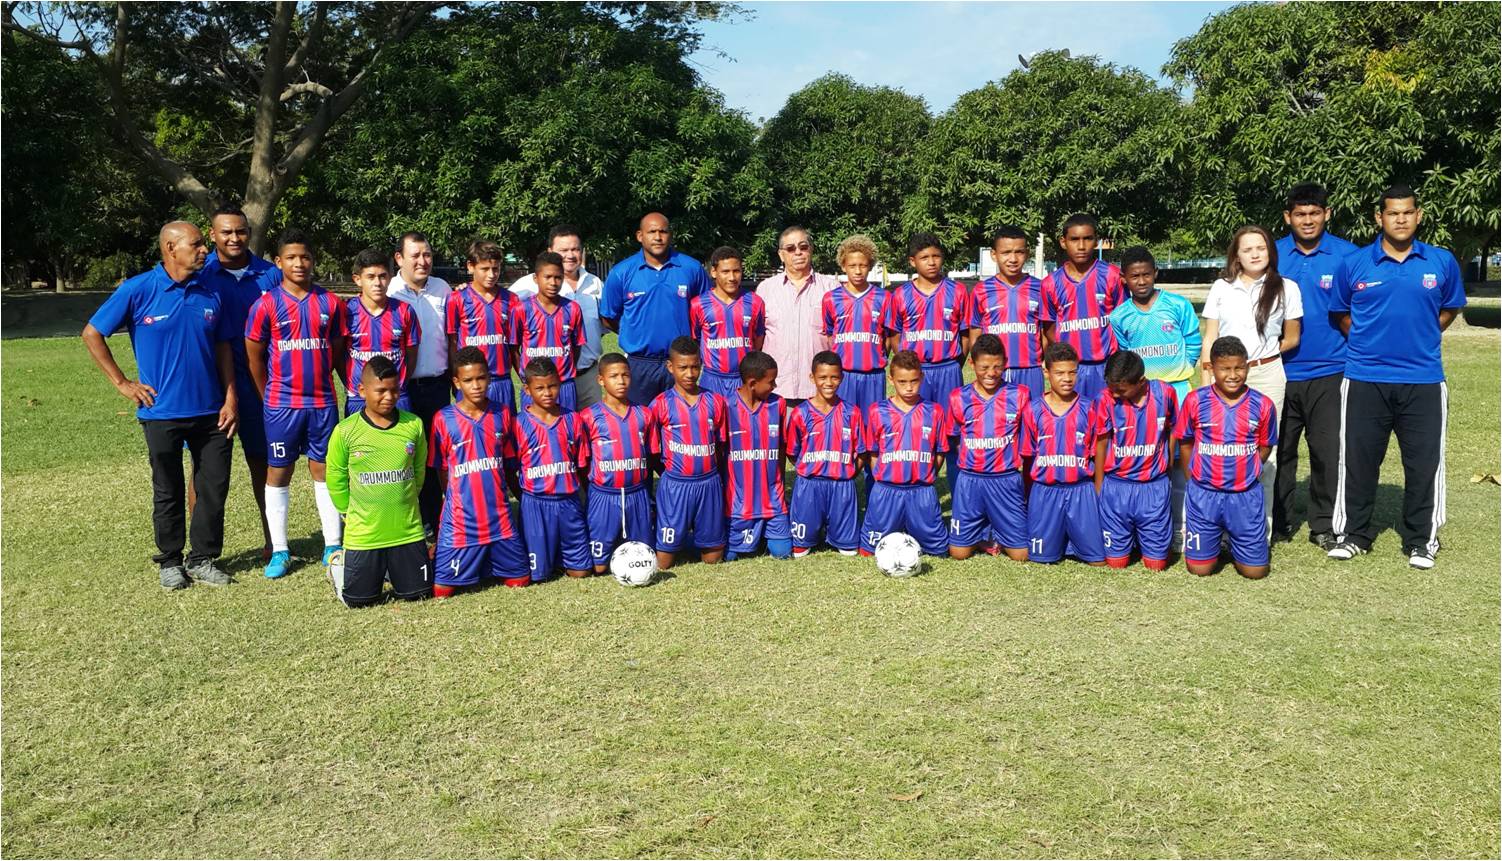 La Selección Magdalena Infantil de Fútbol luciendo uniforme de competencia otorgado por Drummond Ltd.